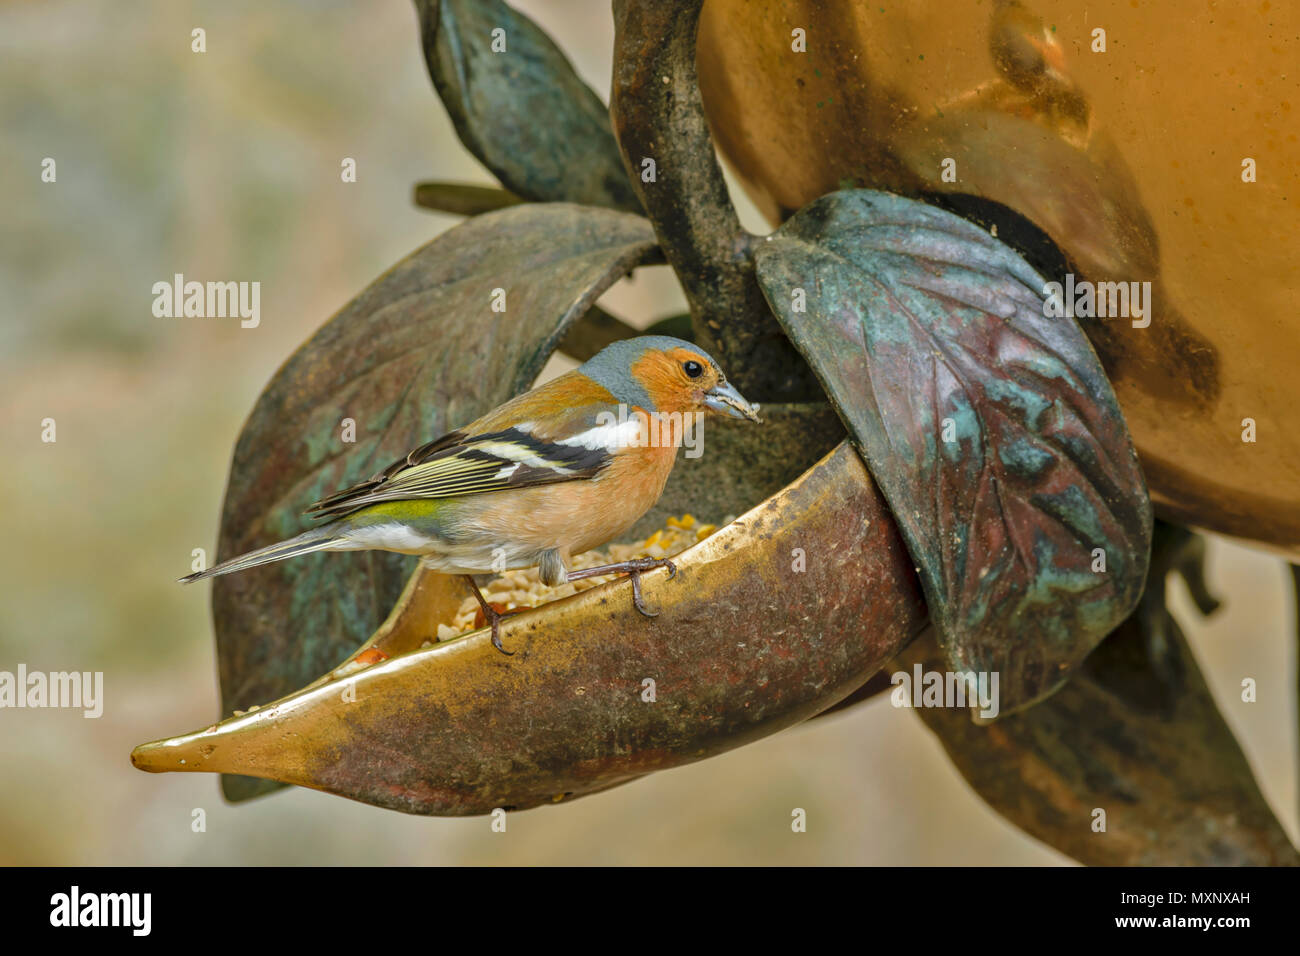 CAWDOR CASTLE Nairn Scozia giardino esotico mondo Bird Feeder con alimentazione fringuello Foto Stock